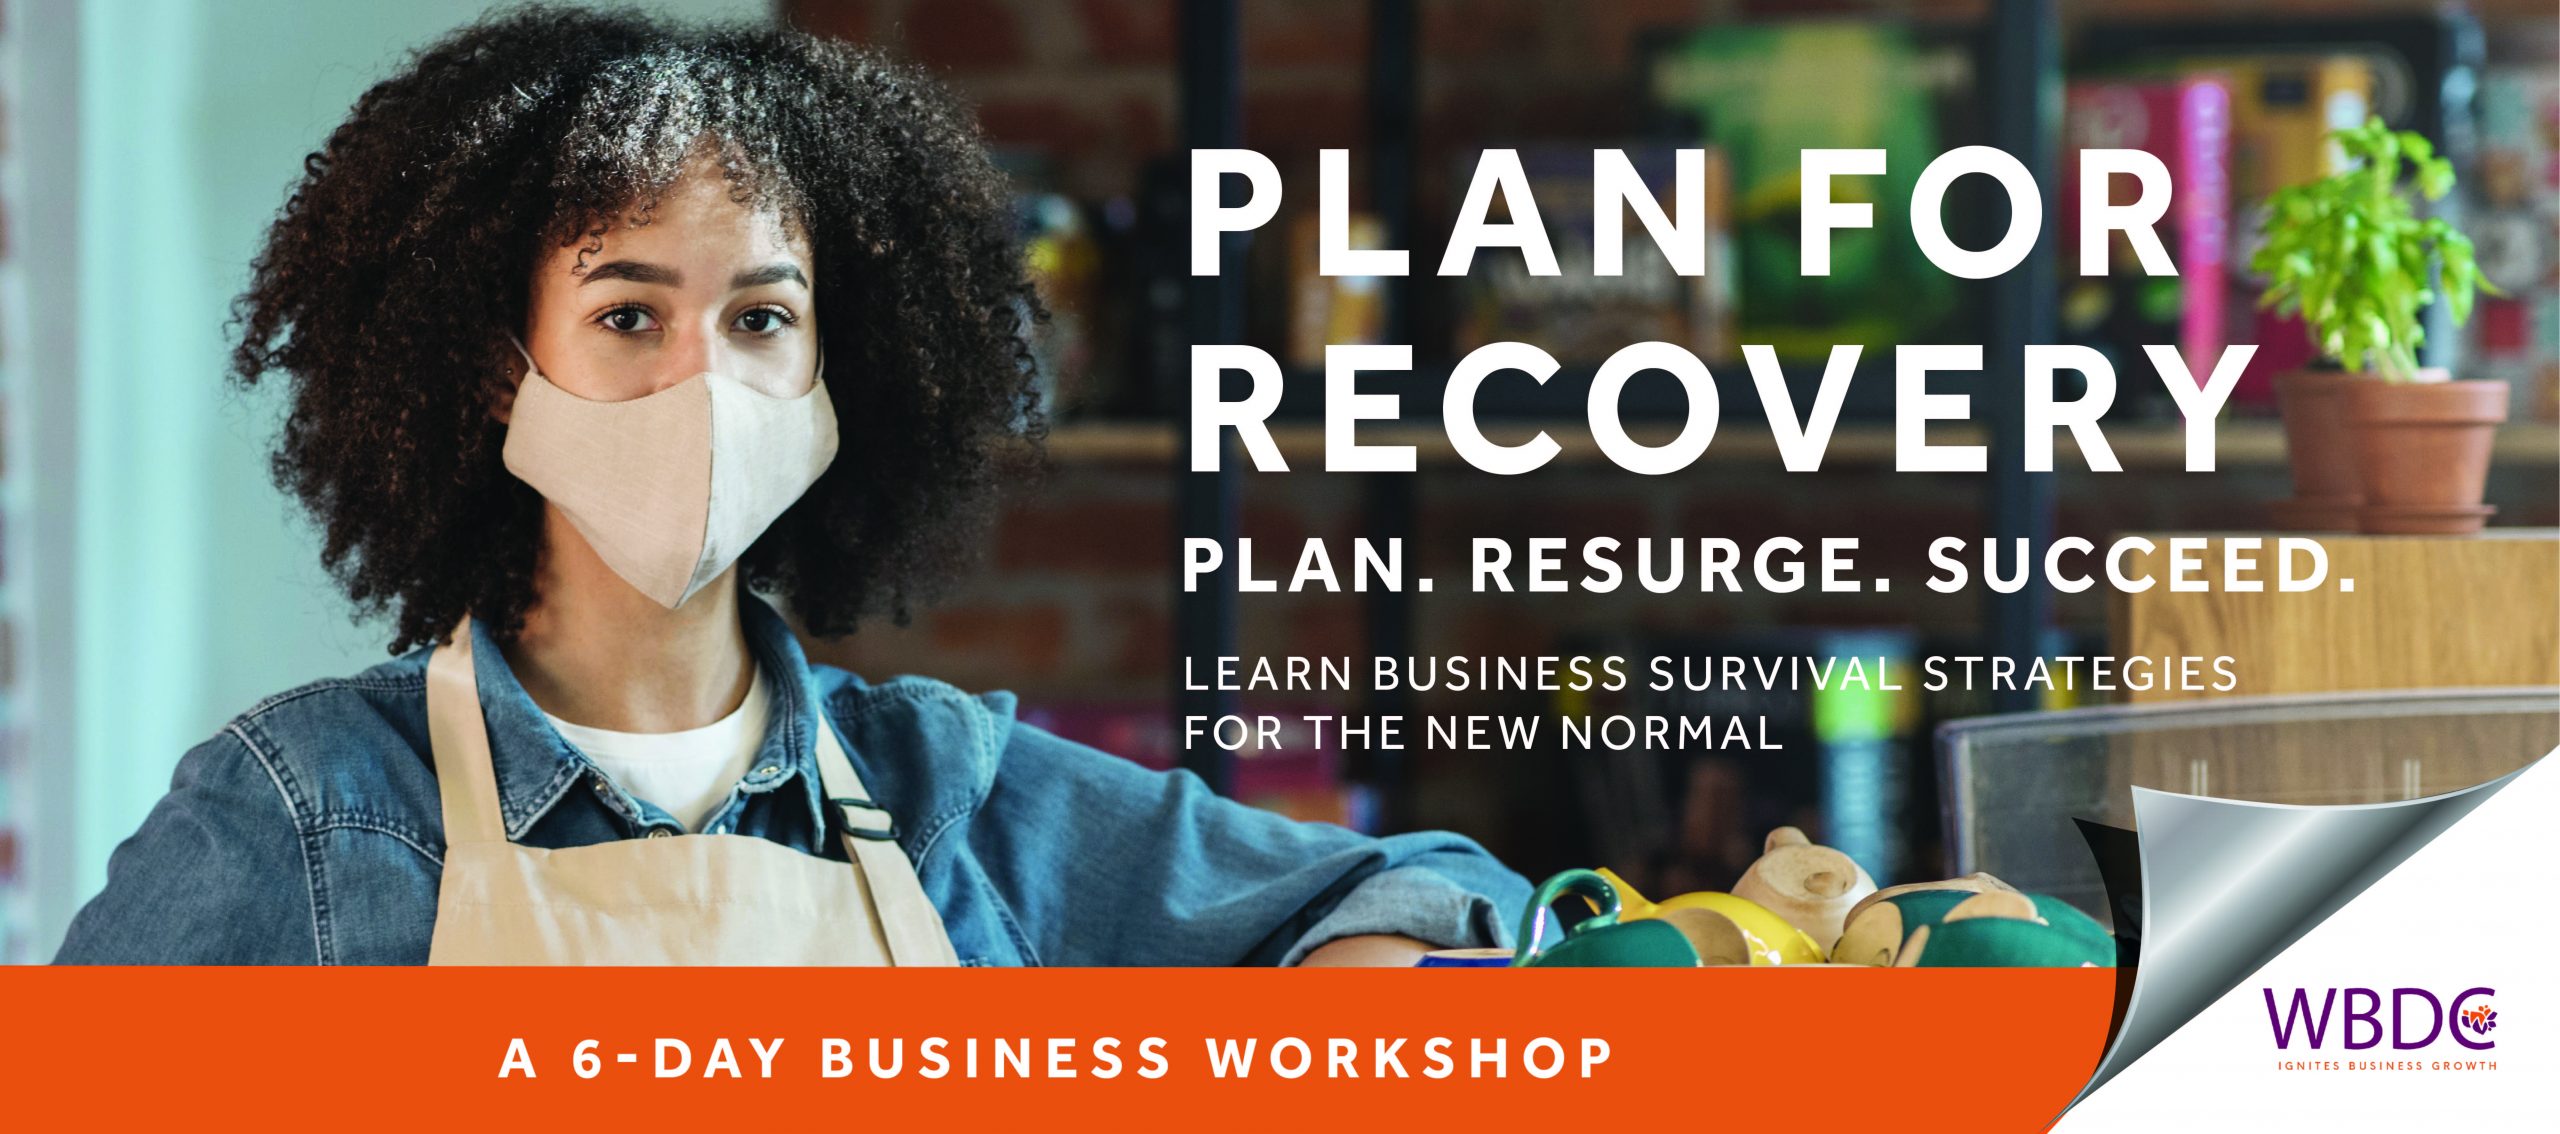 WBDC: Comience a planificar su negocio para la recuperación en 2021